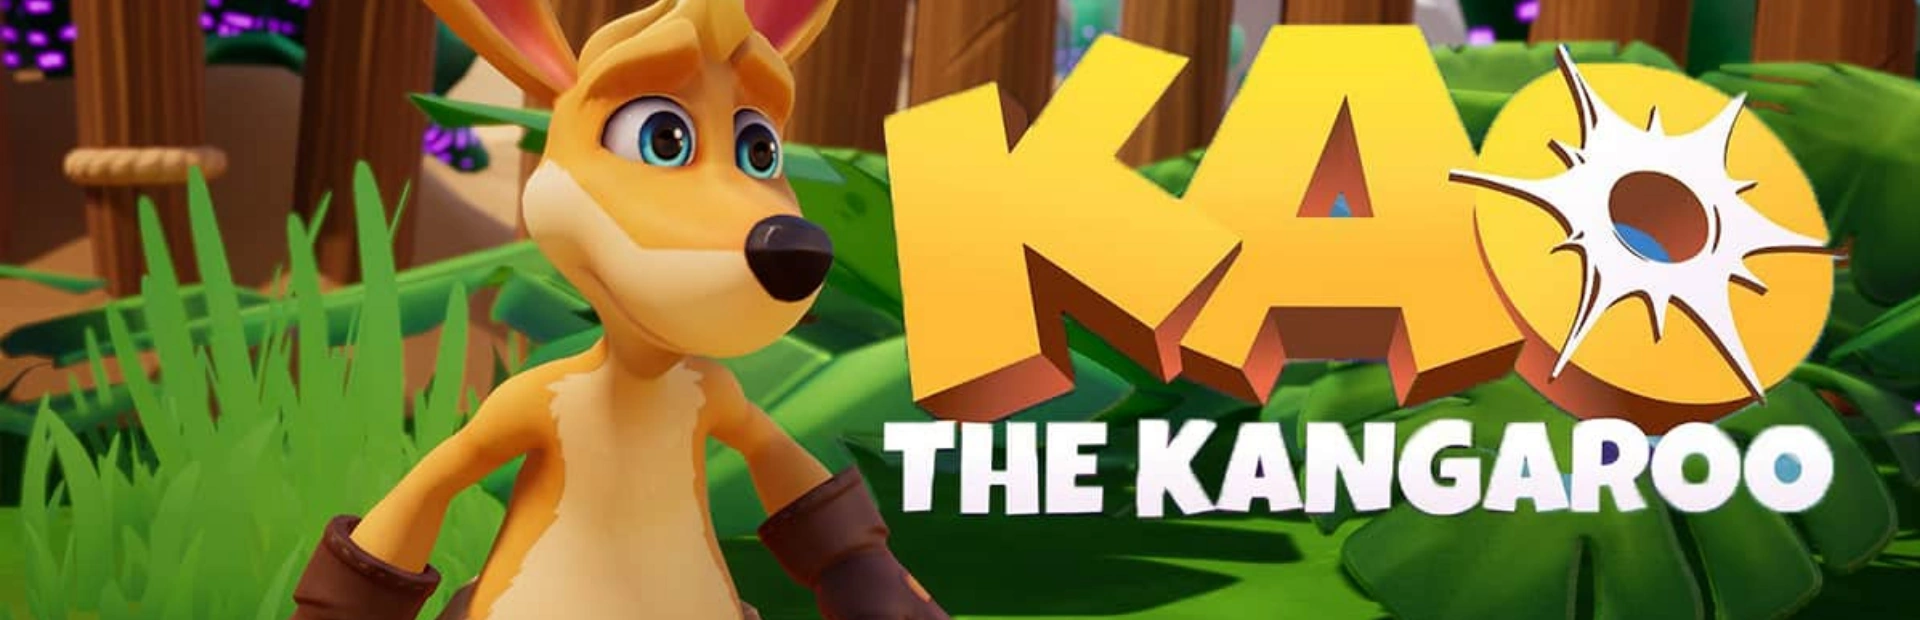 دانلود بازی Kao the Kangaroo برای کامپیوتر | گیمباتو